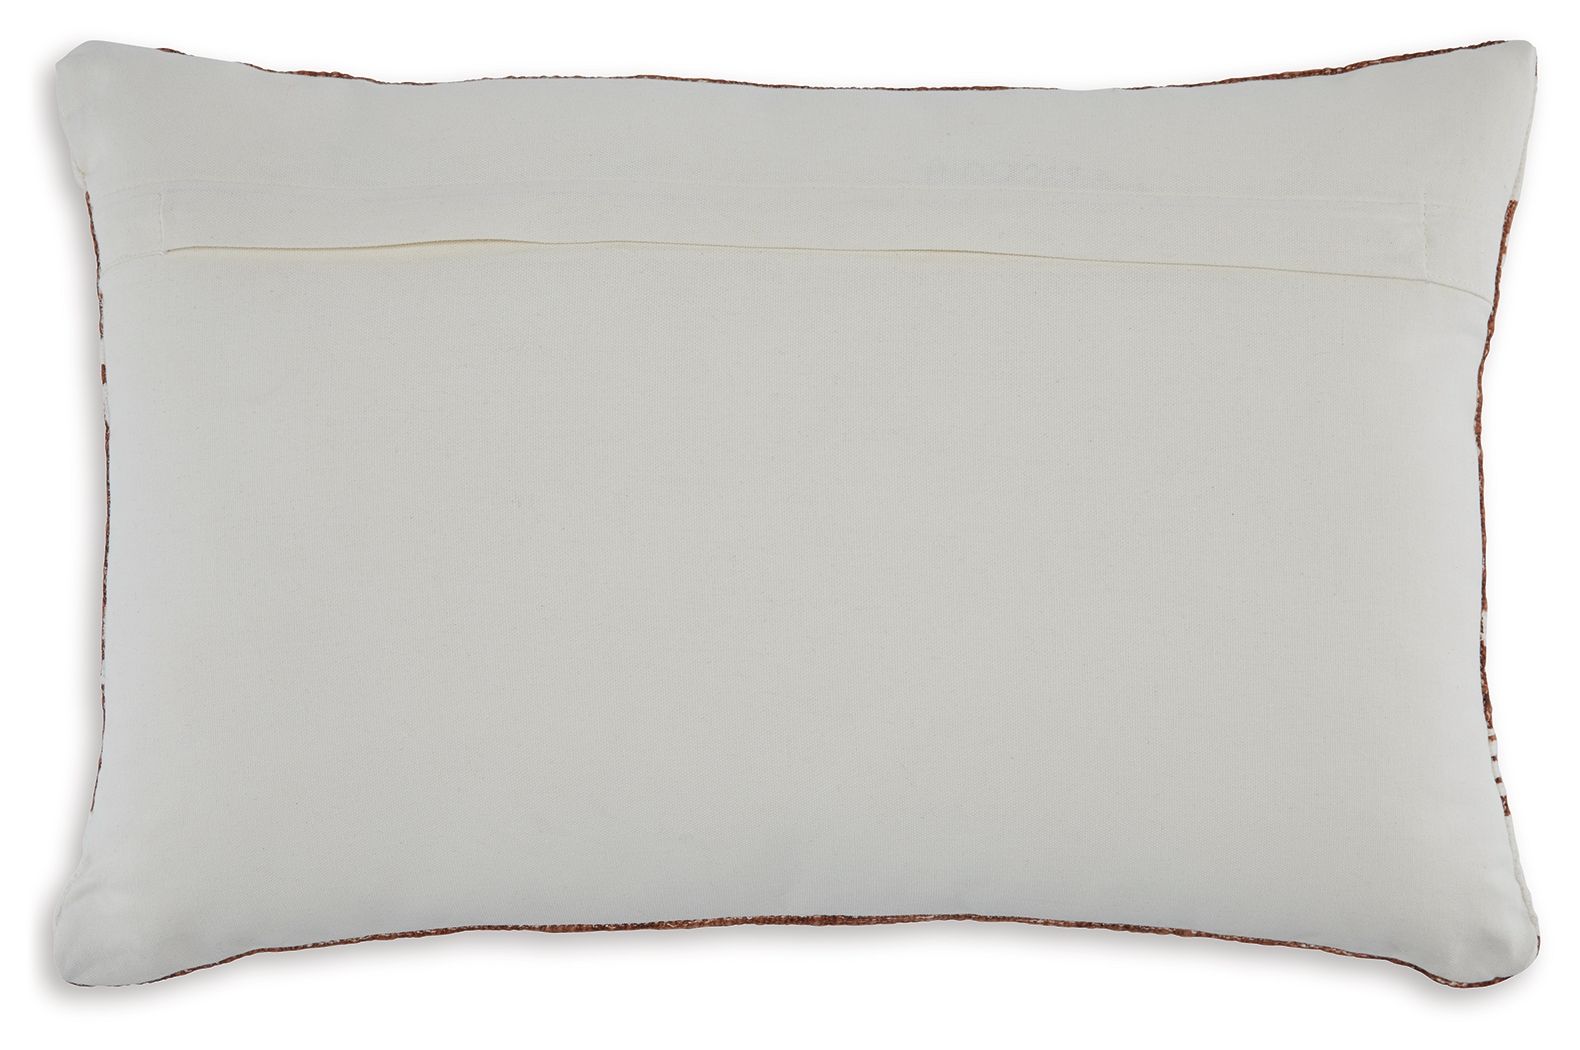 Ackford - Pillow